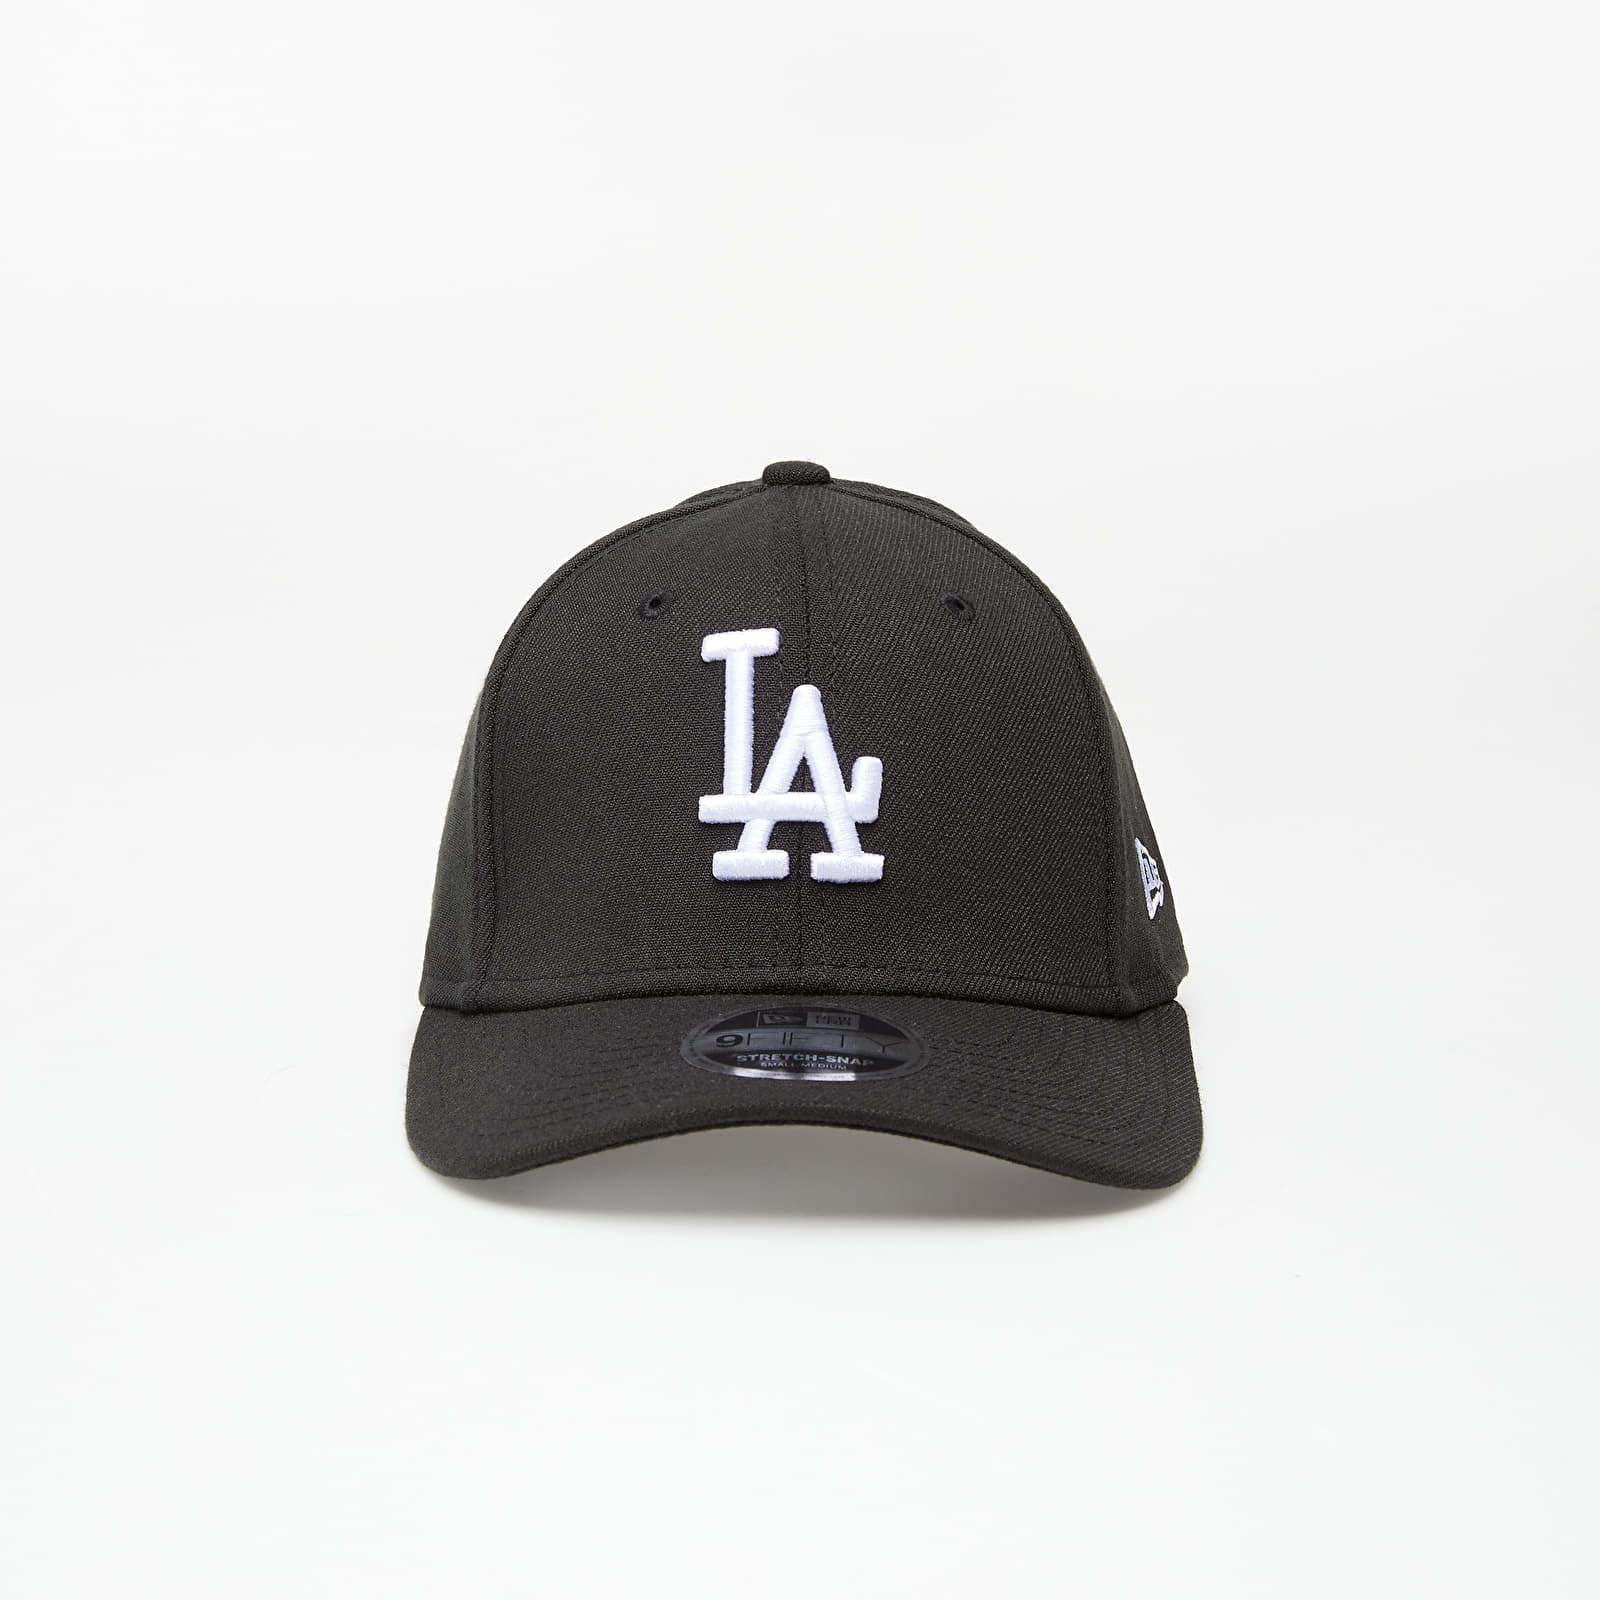 Caps New Era Cap 9Fifty Mlb Stretch Snap Los Angeles Dodgers Blackotc